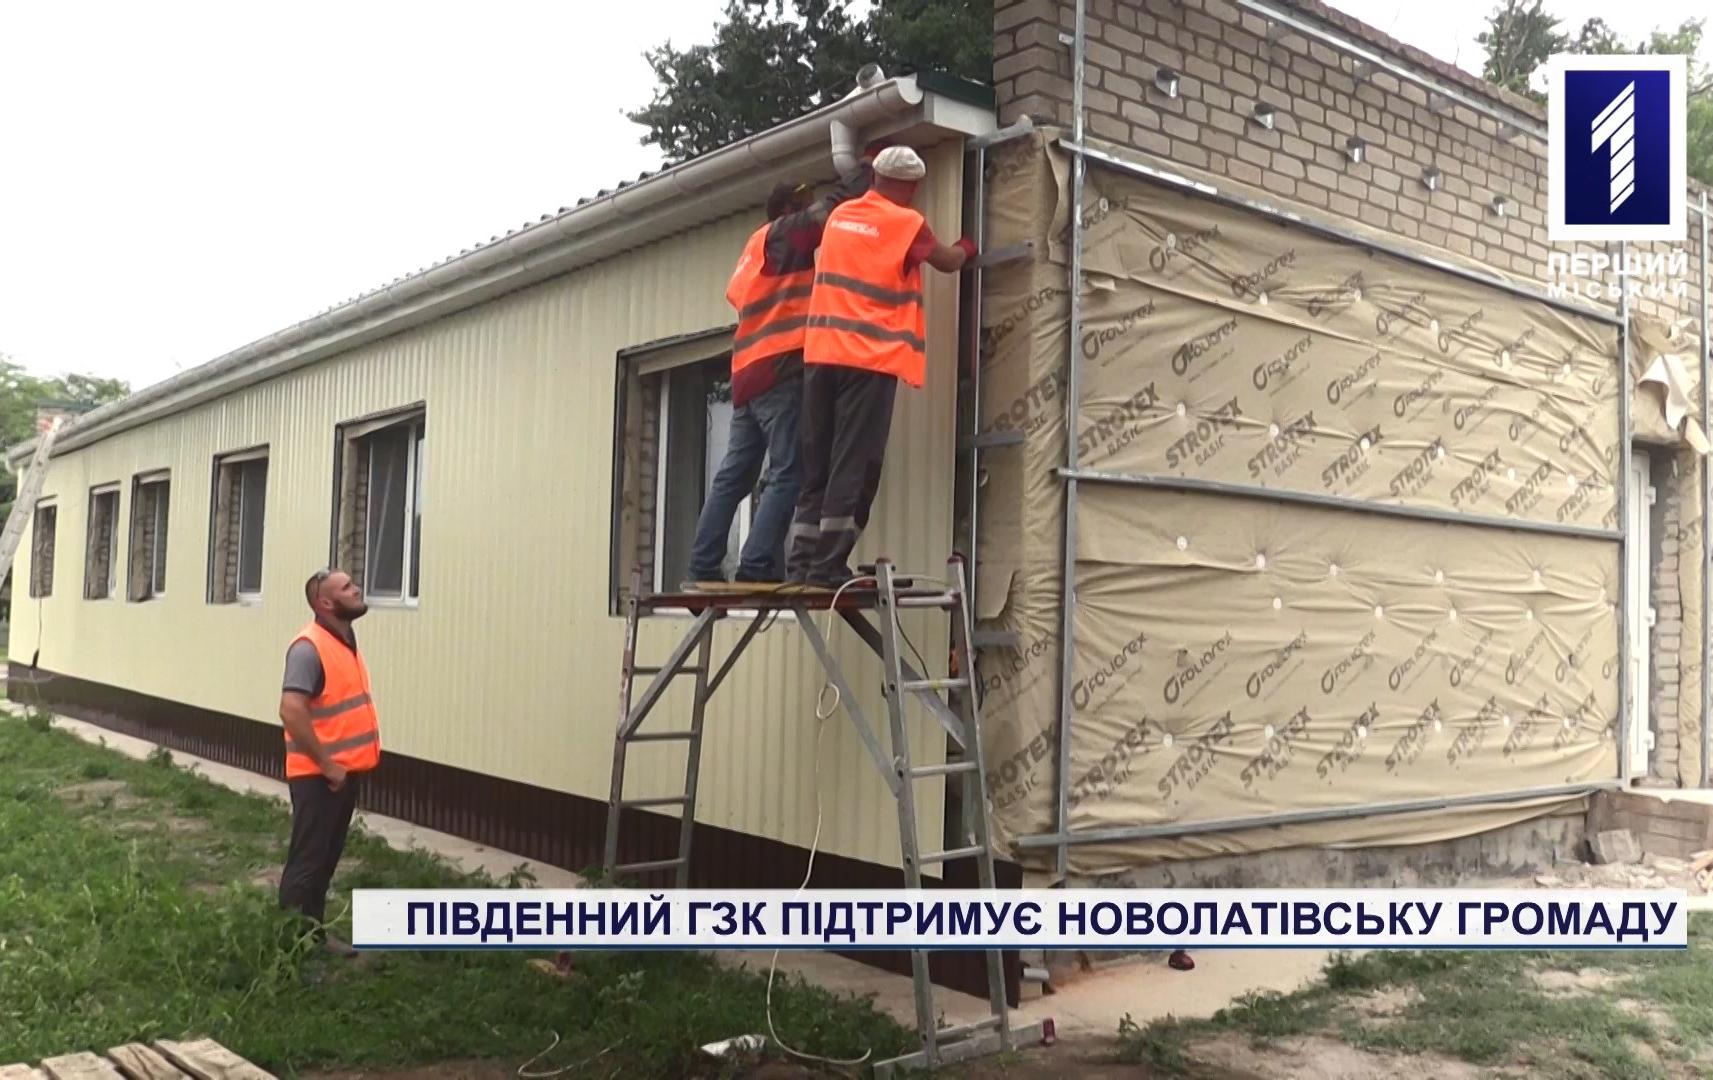 Спецрепортаж: Південний ГЗК підтримує Новолатівську громаду